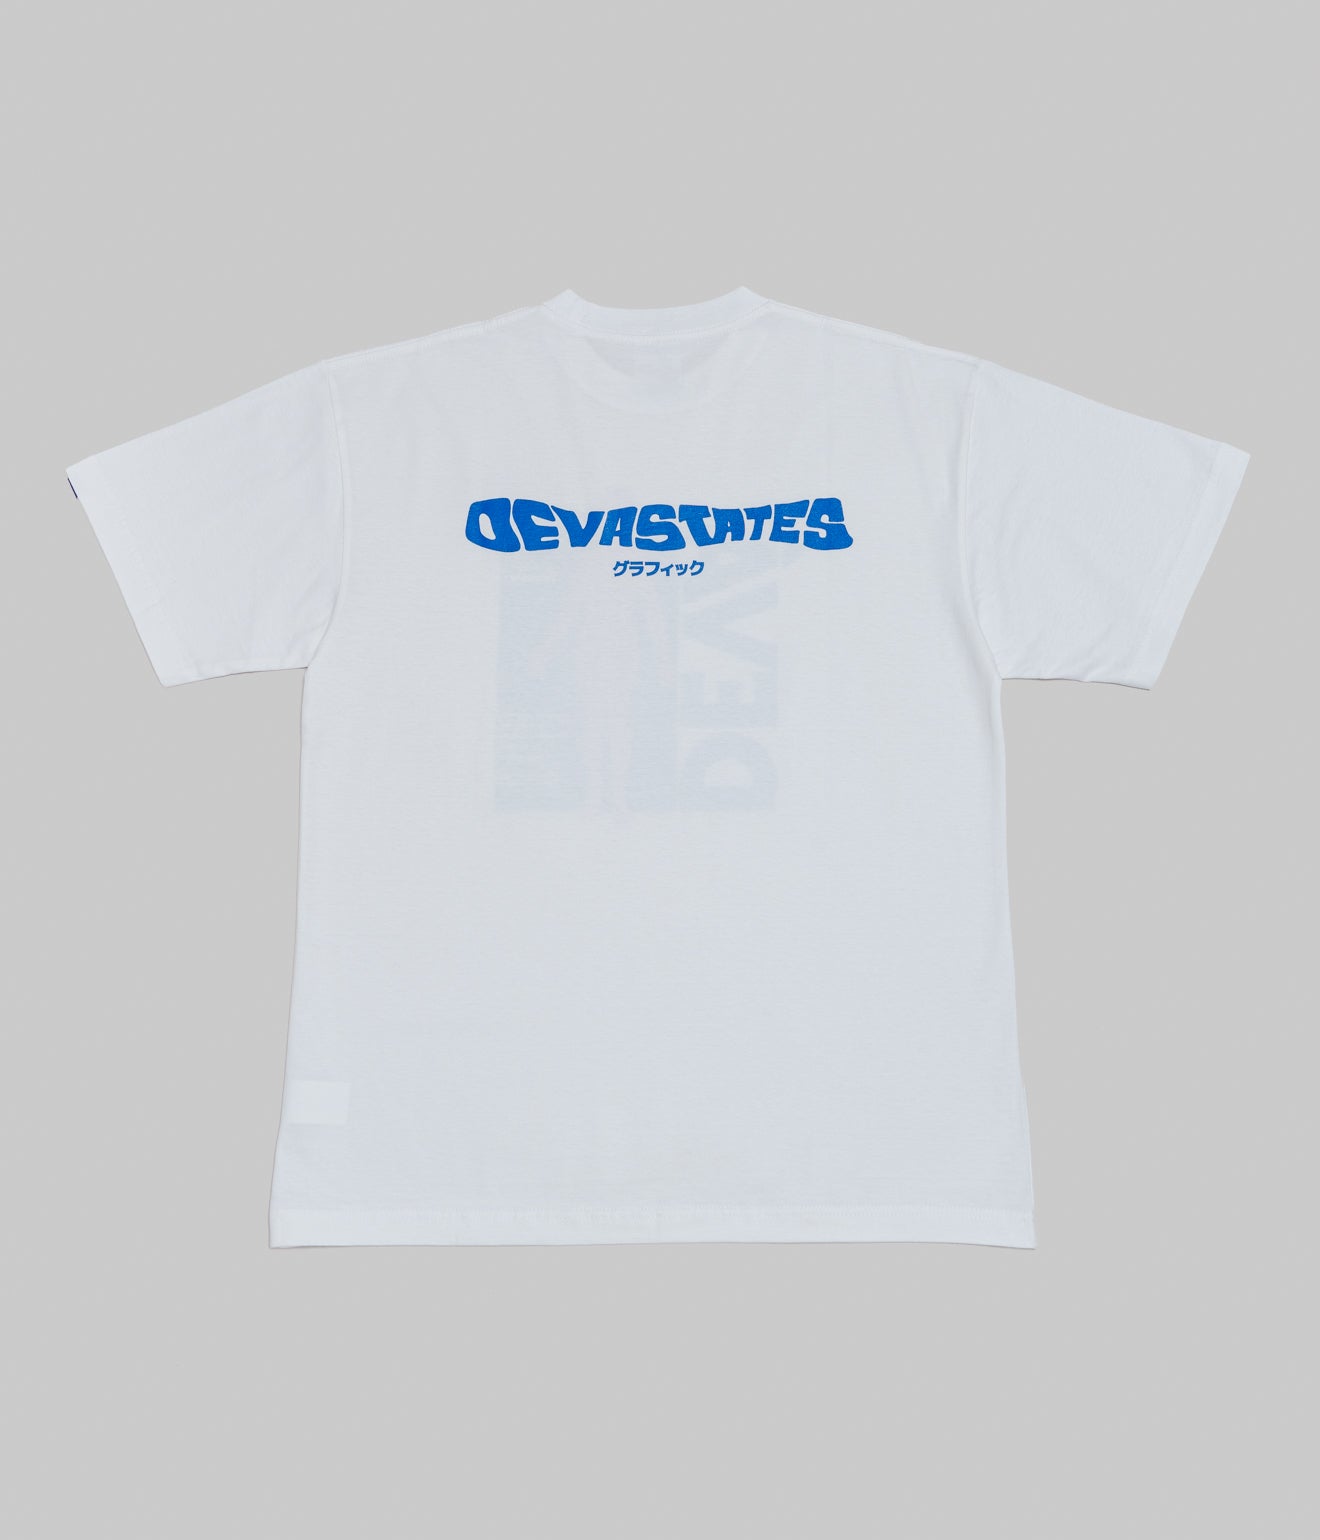 DEVÁ STATES "ANATOMY T-Shirt" White - WEAREALLANIMALS